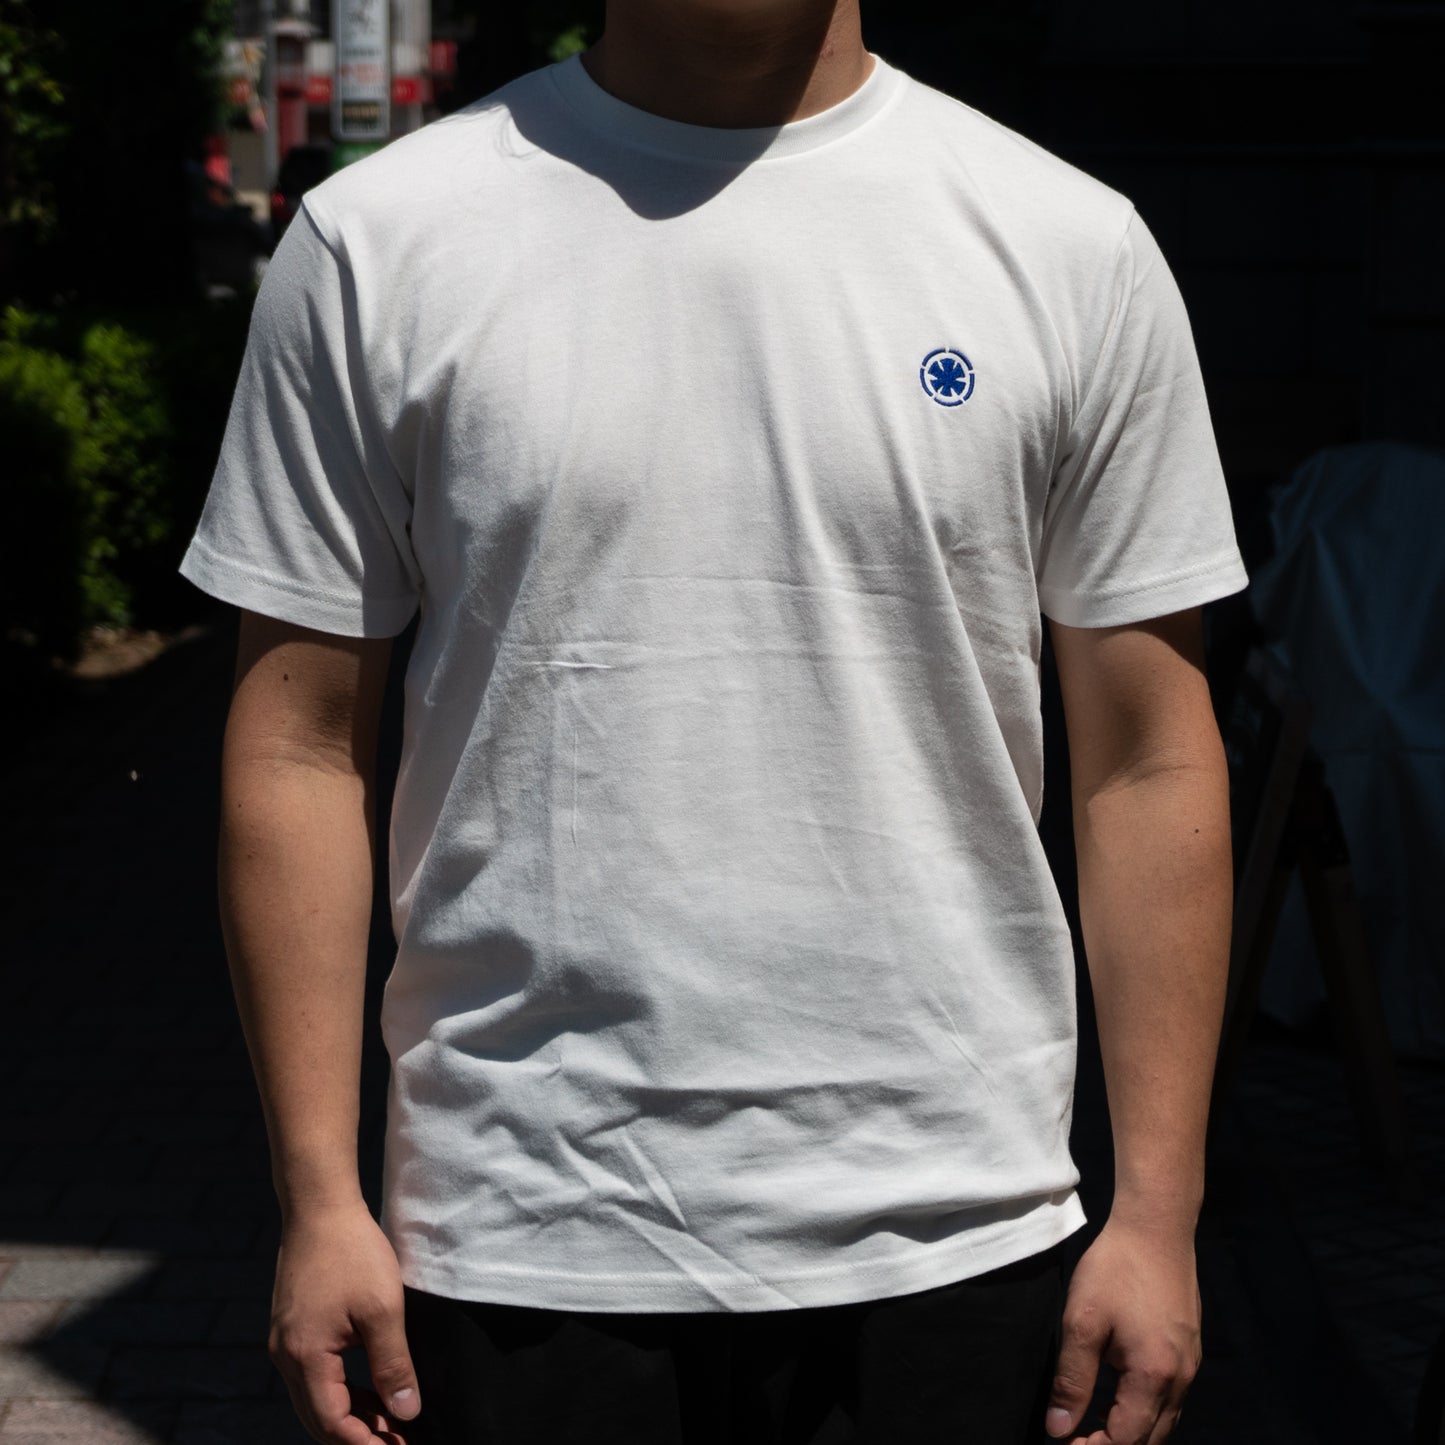 Takada no Hamono T-shirts White Large - HITOHIRA